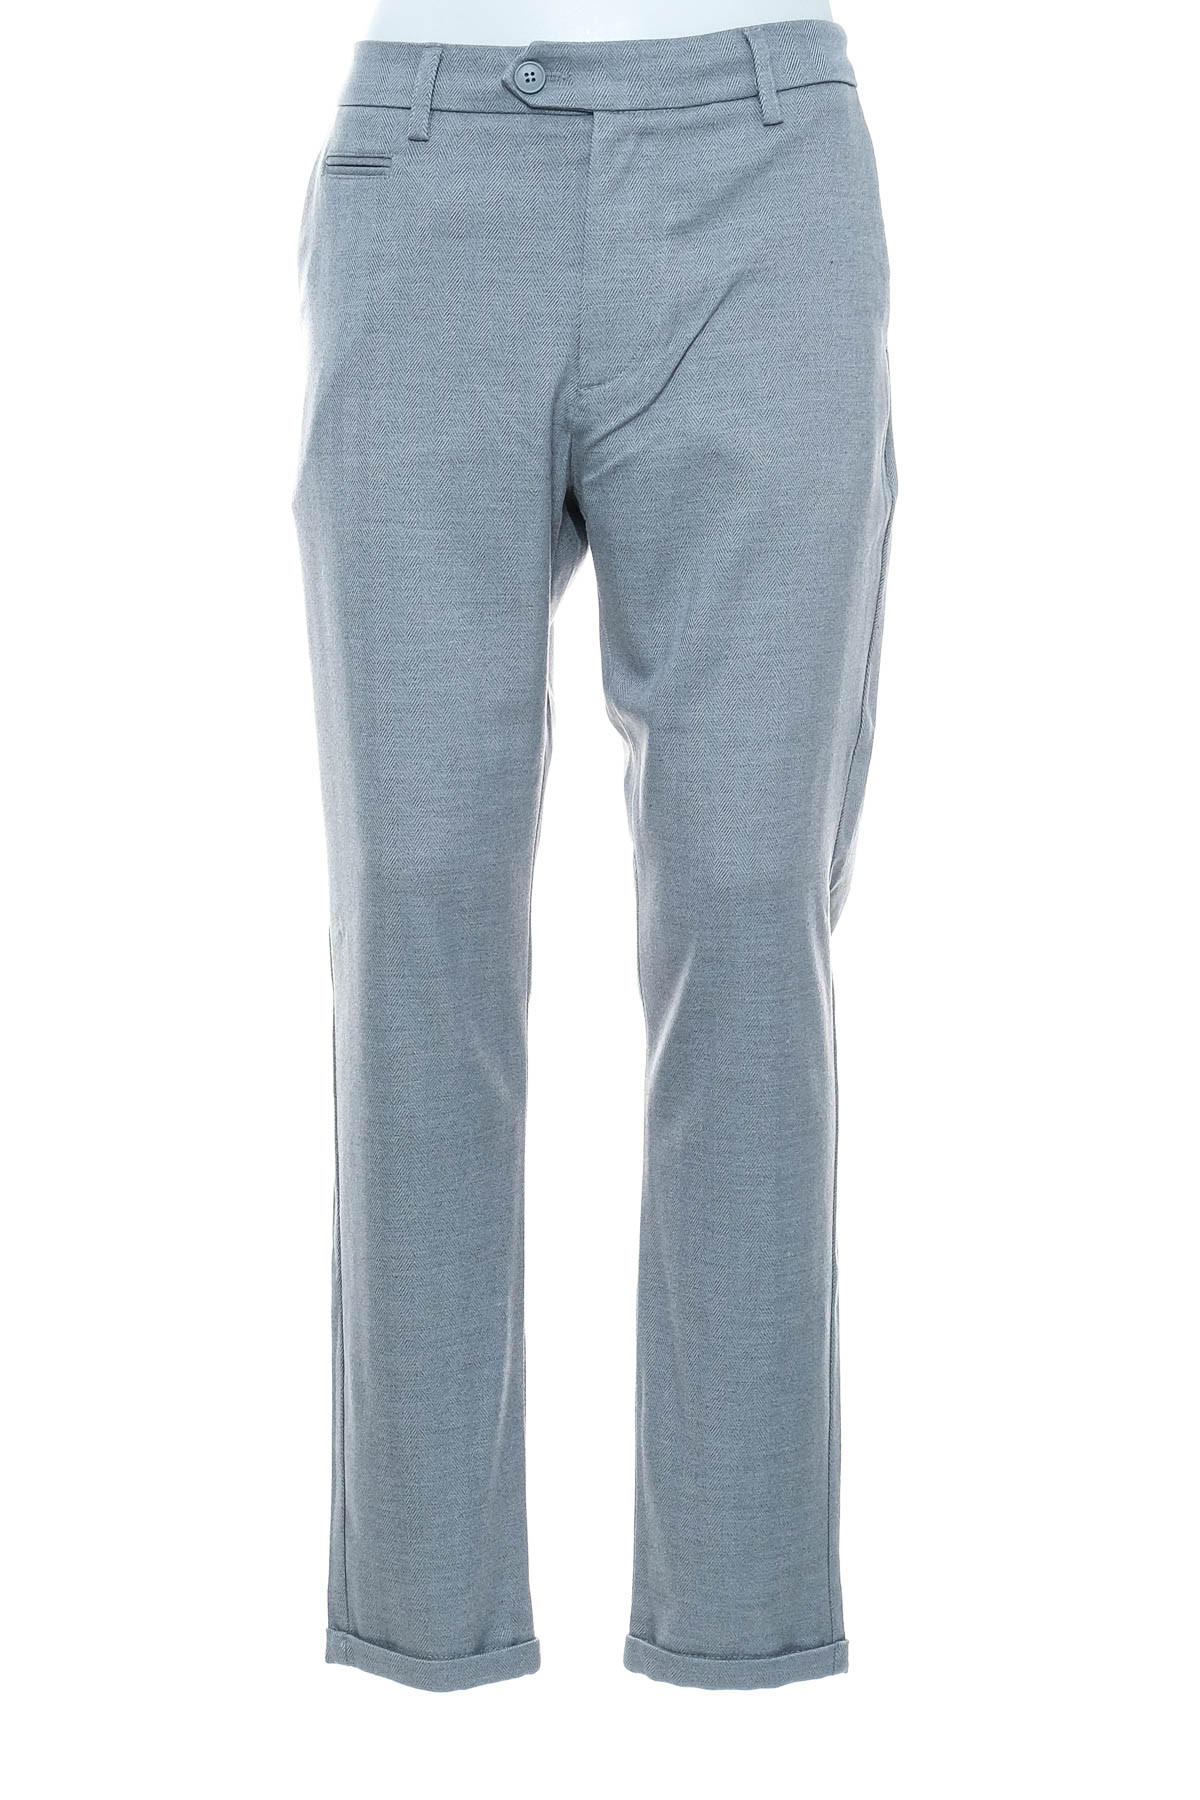 Men's trousers - LES DEUX - 0